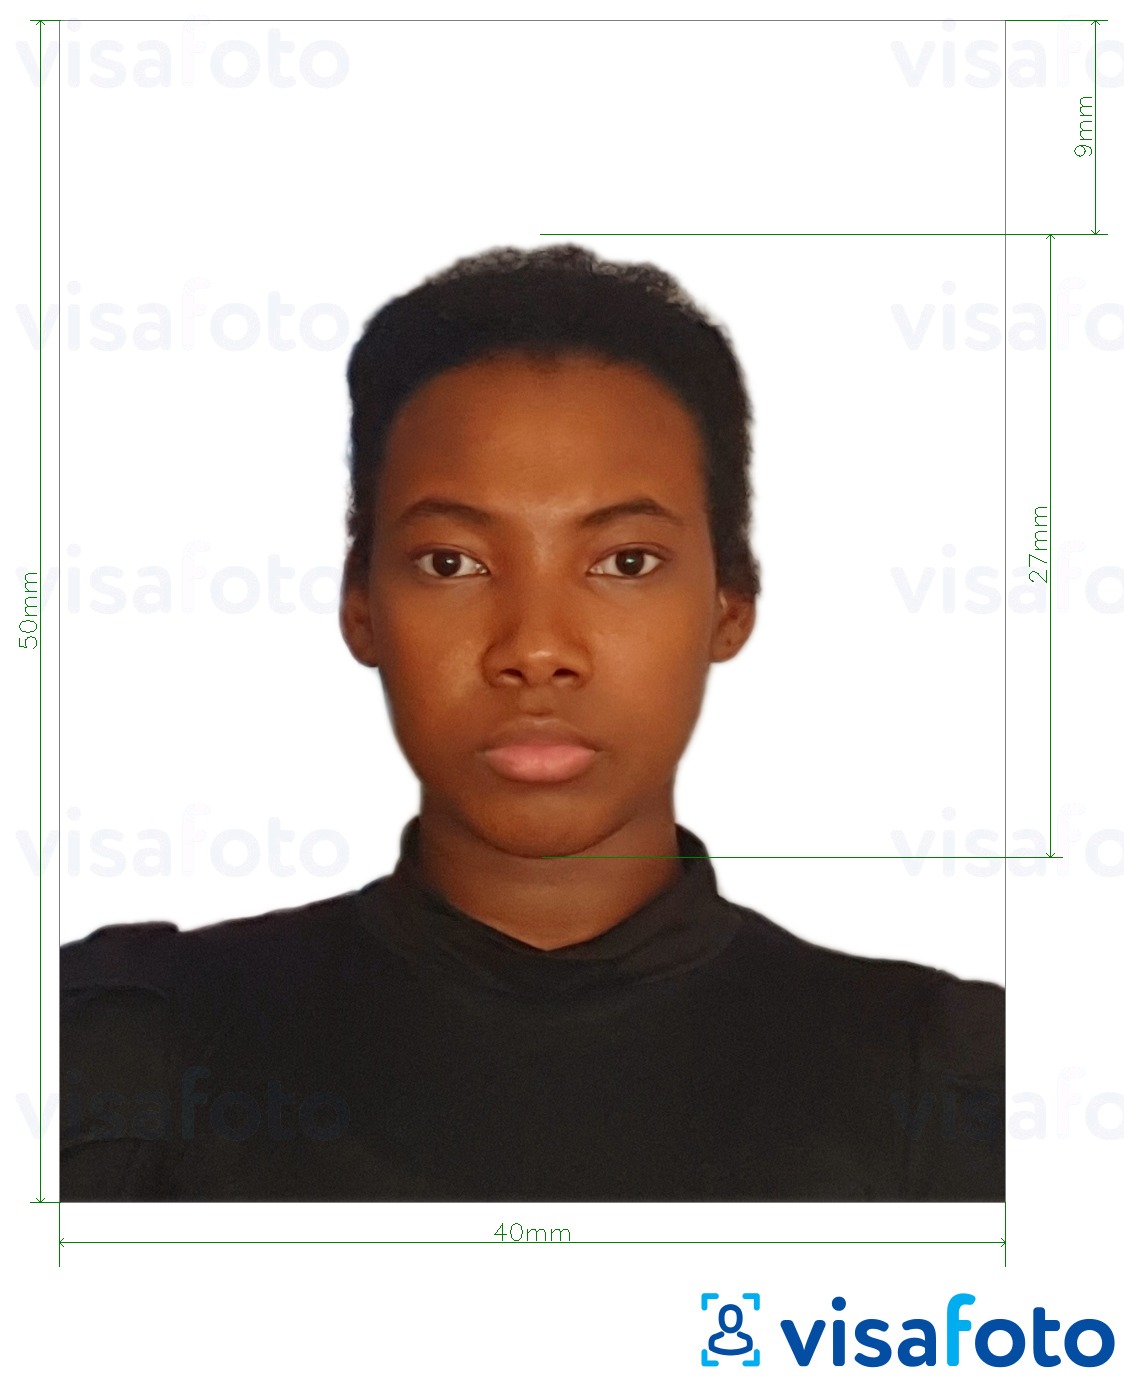 Ejemplo de foto para Colombia Tarjeta de Identidad 4x5 cm con la especificación del tamaño exacto